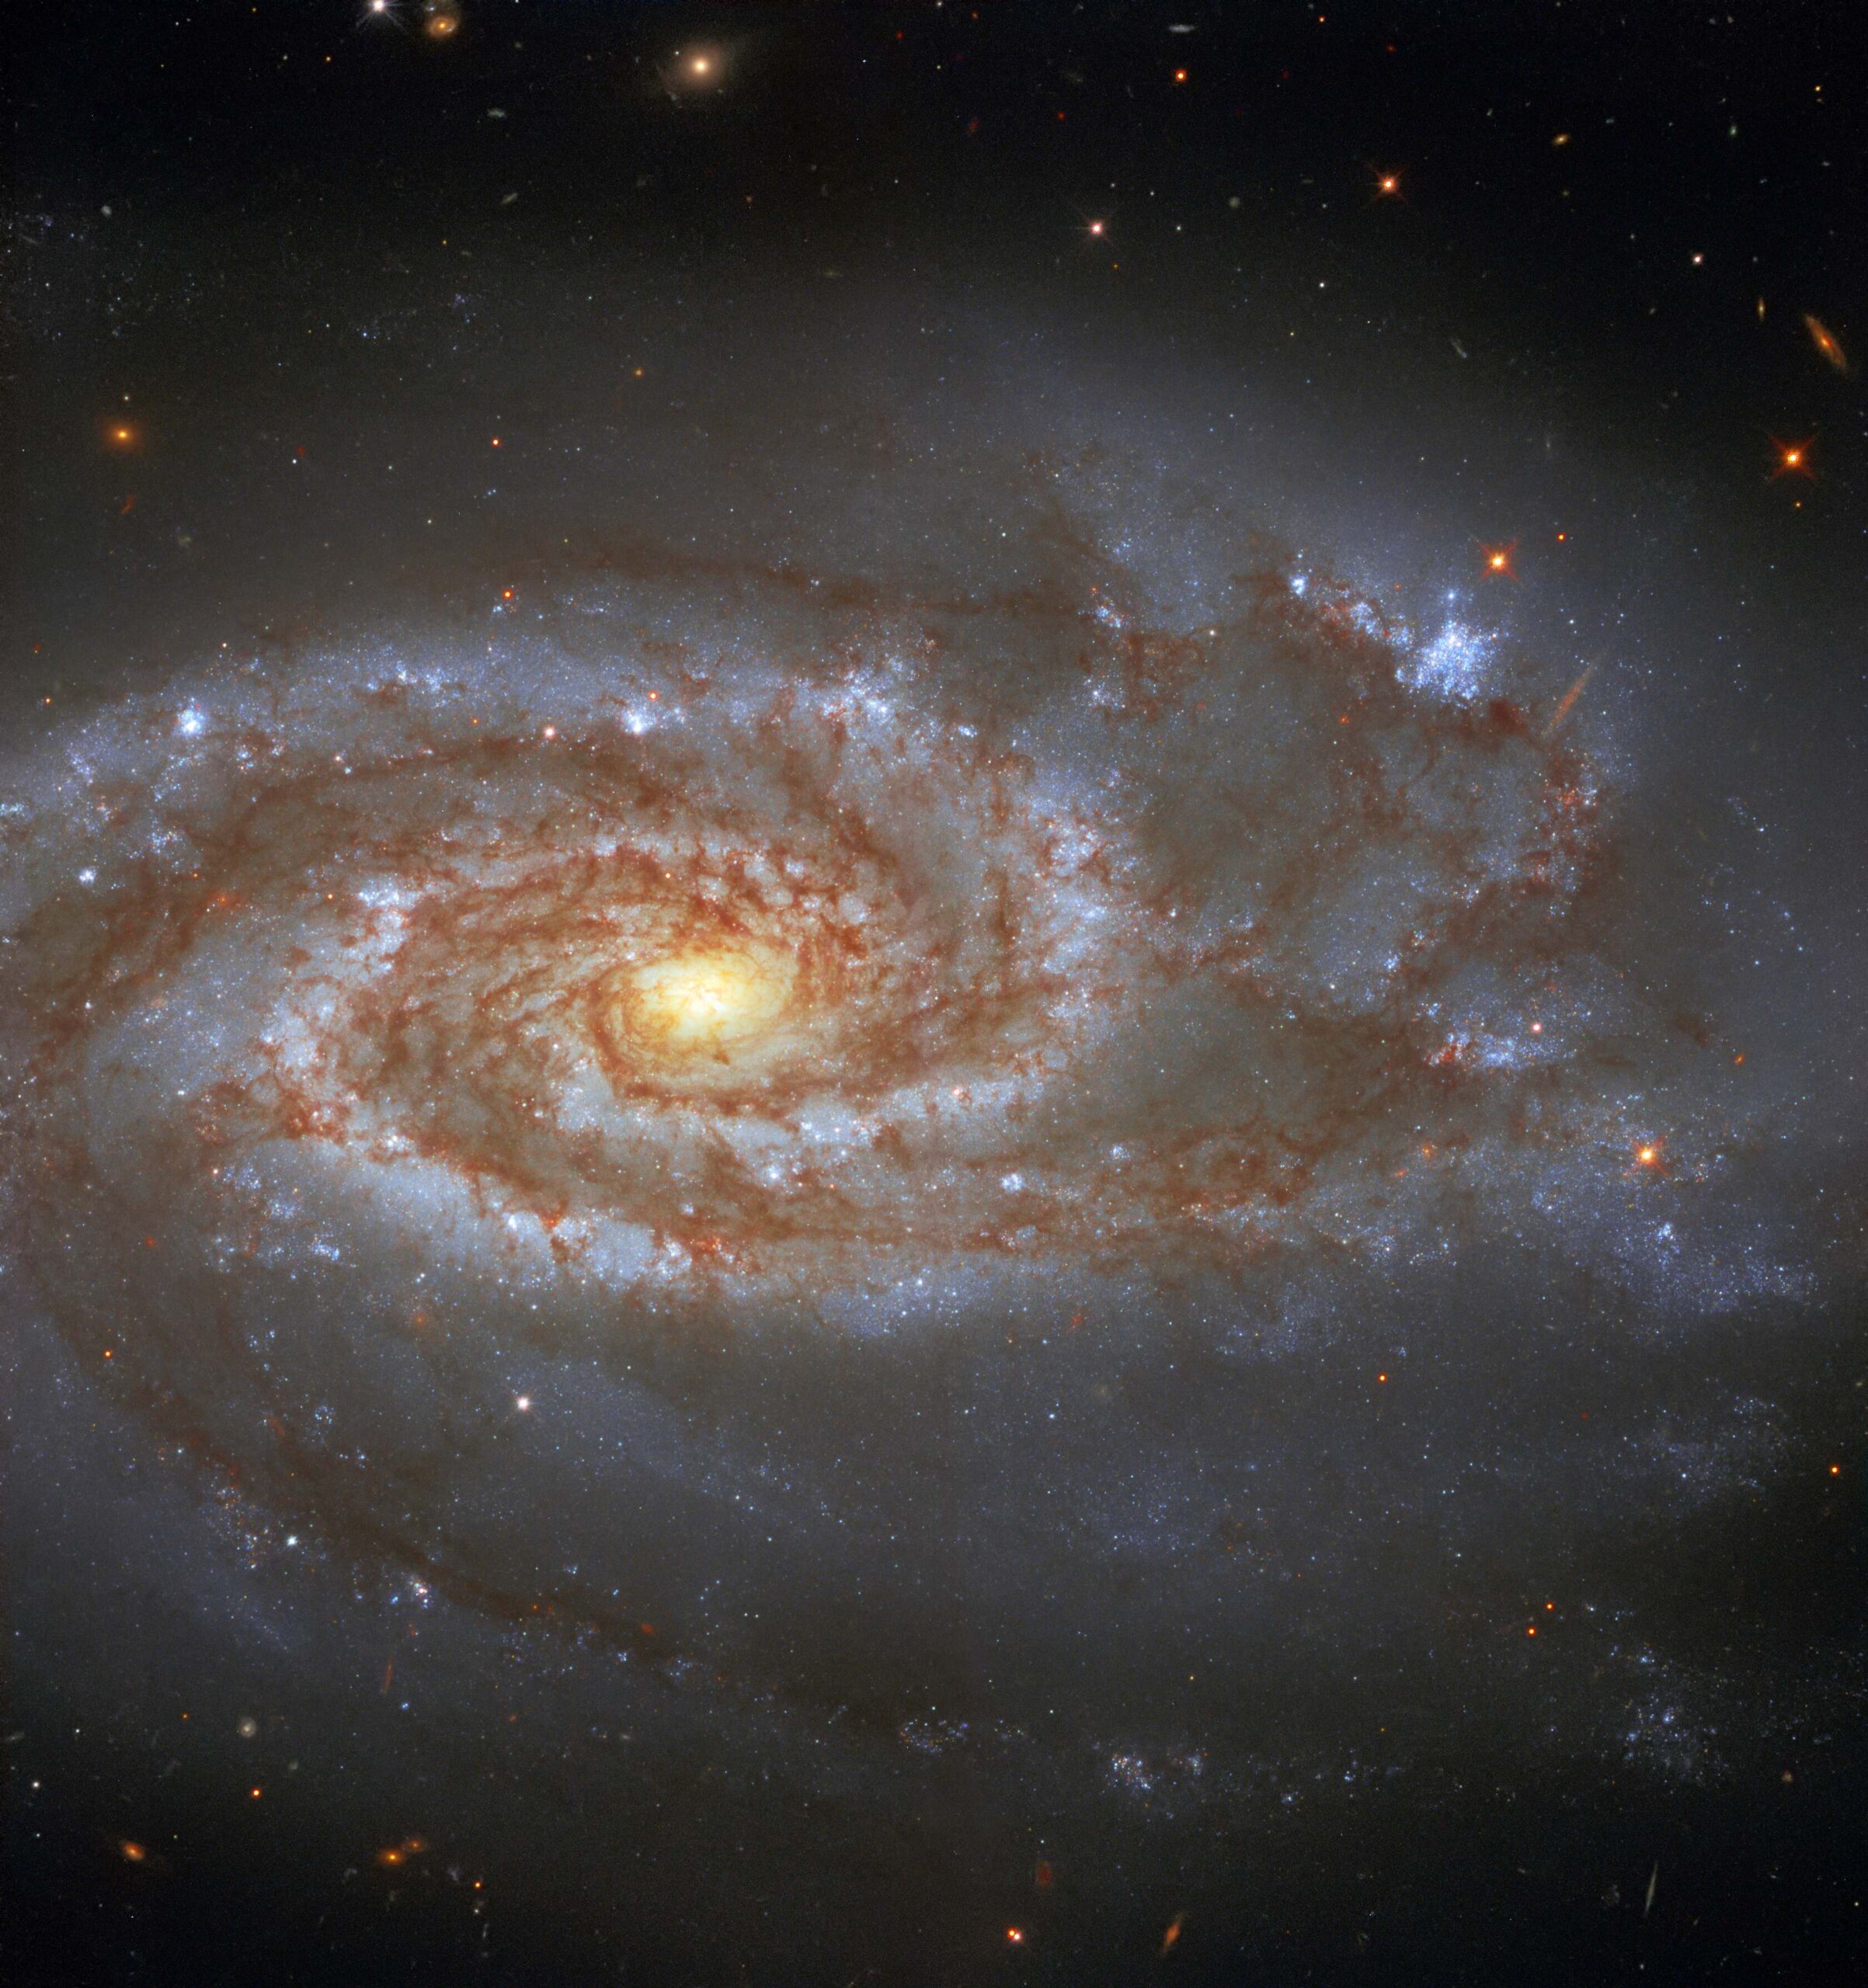 La galaxia NGC 5861 captada por el telescopio espacial Hubble. Fotografía astronómica.